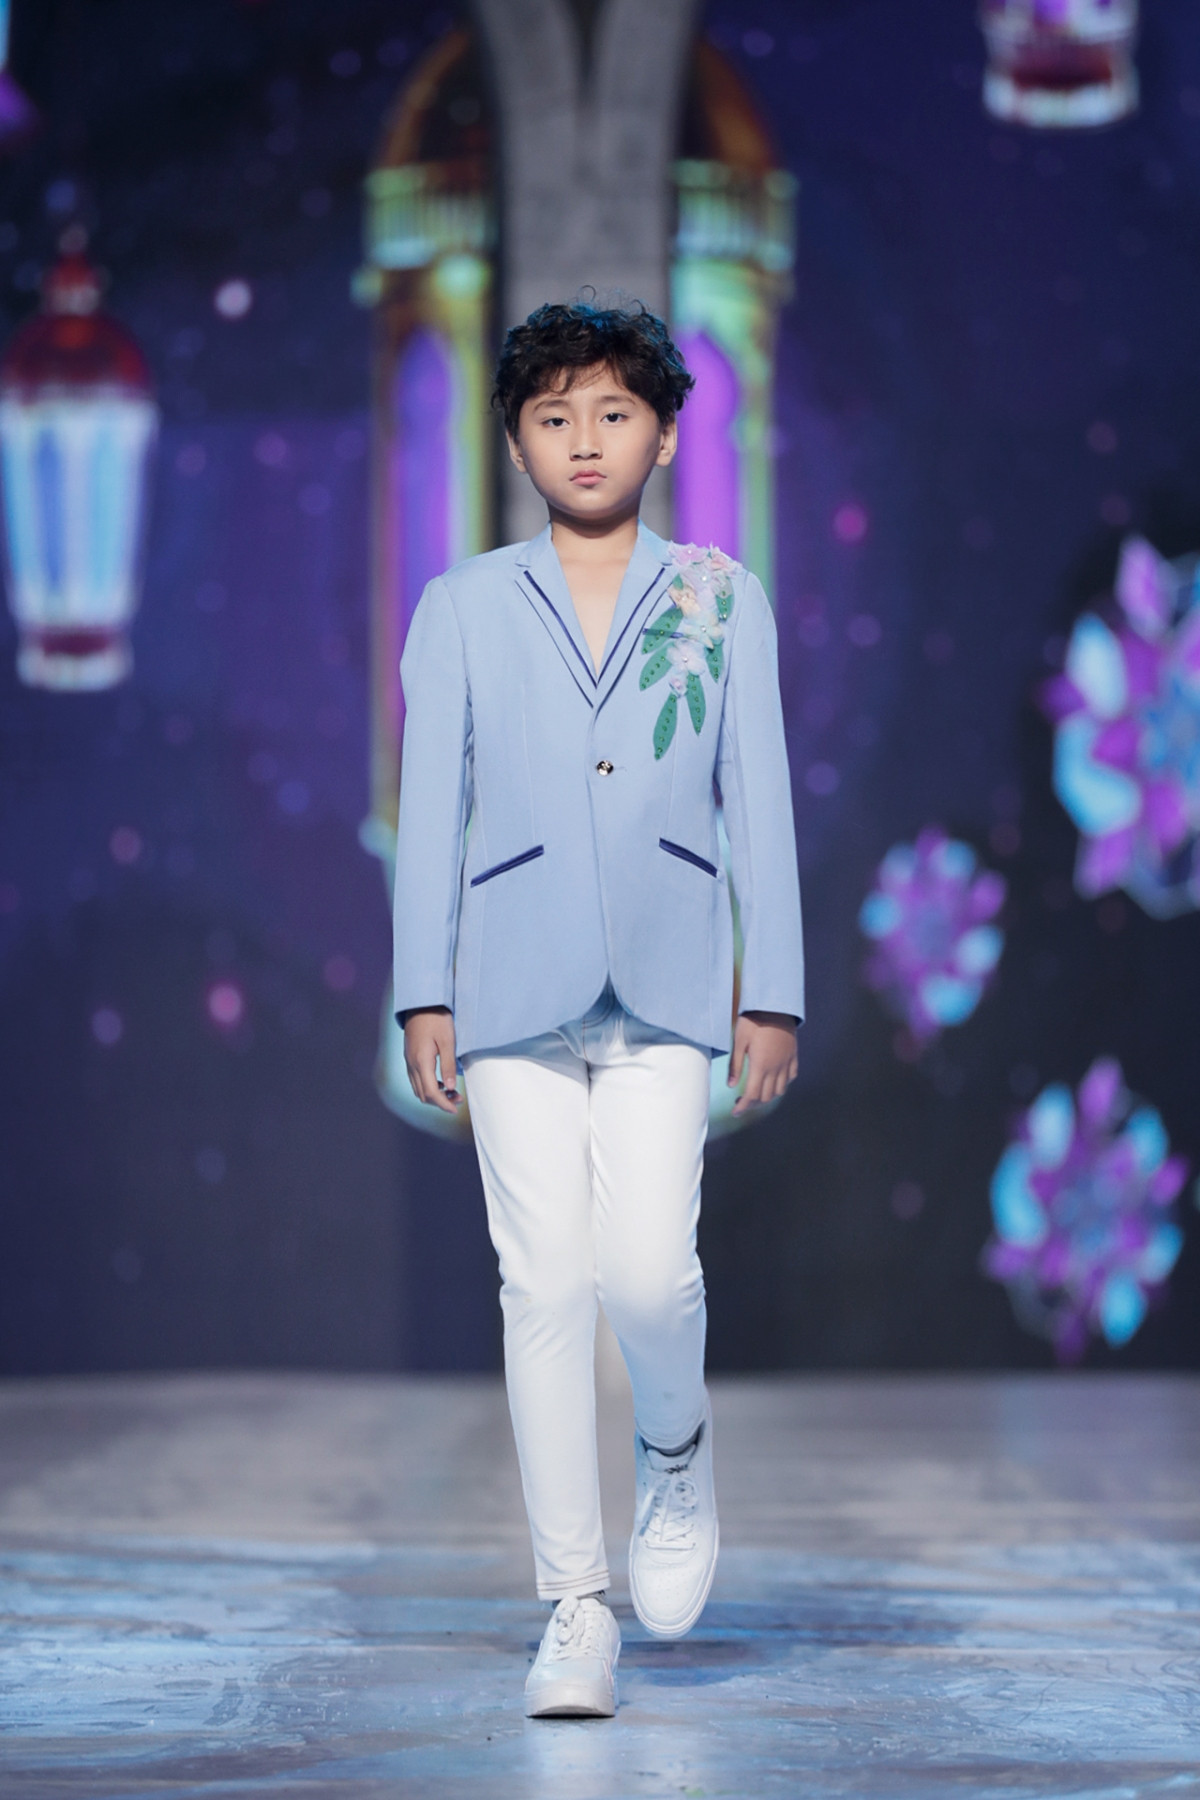 Mẫu nhí từng tham gia show thời trang của NTK Đỗ Mạnh Cường vào tháng 10/2020, góp mặt vào Vietnam Runway Fashion Week trong BST của NTK Trương Thanh Long.